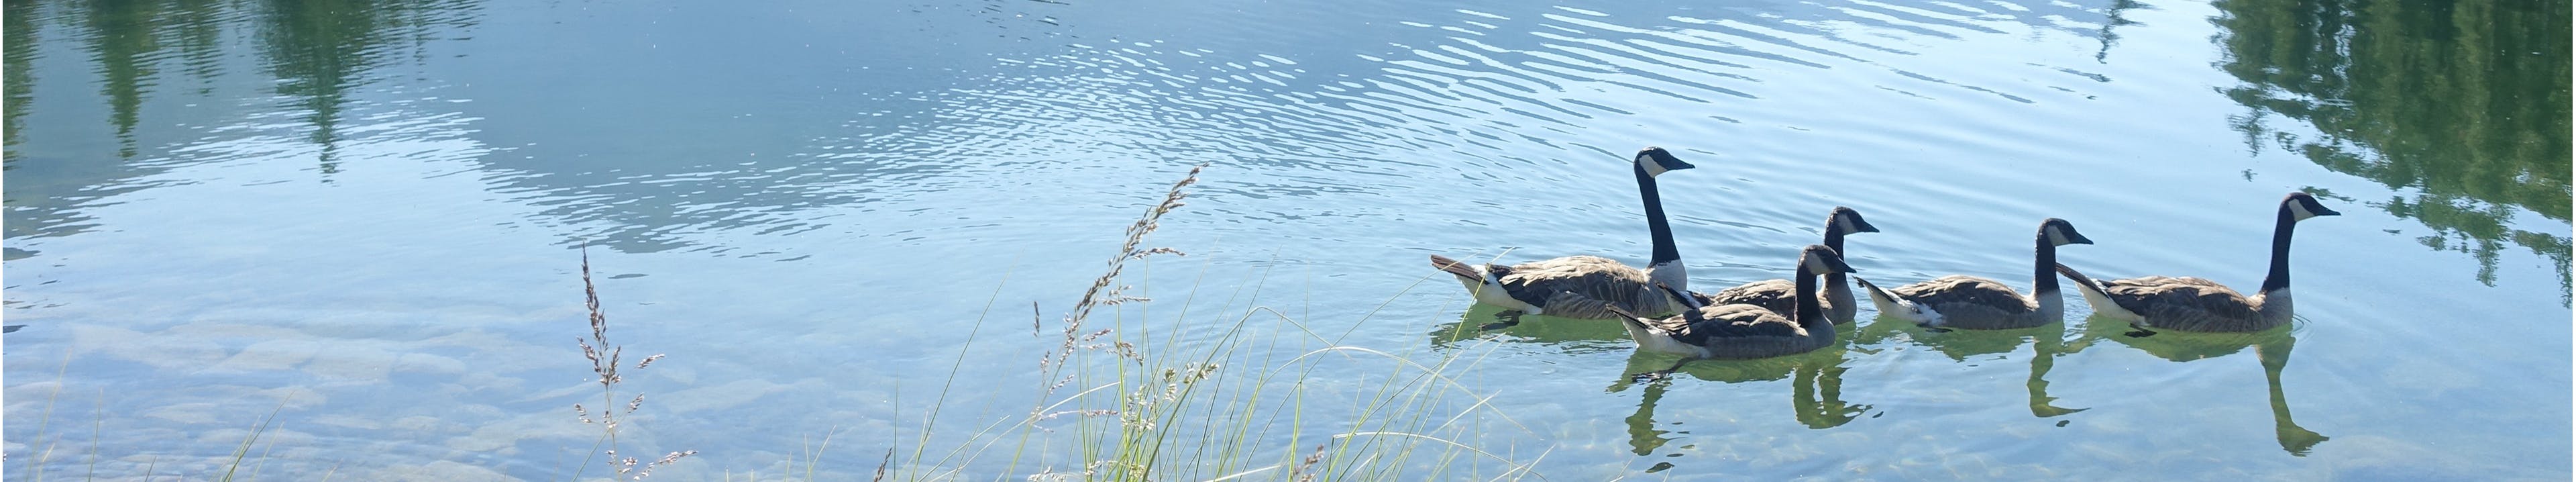 Geese on Mountain Lake